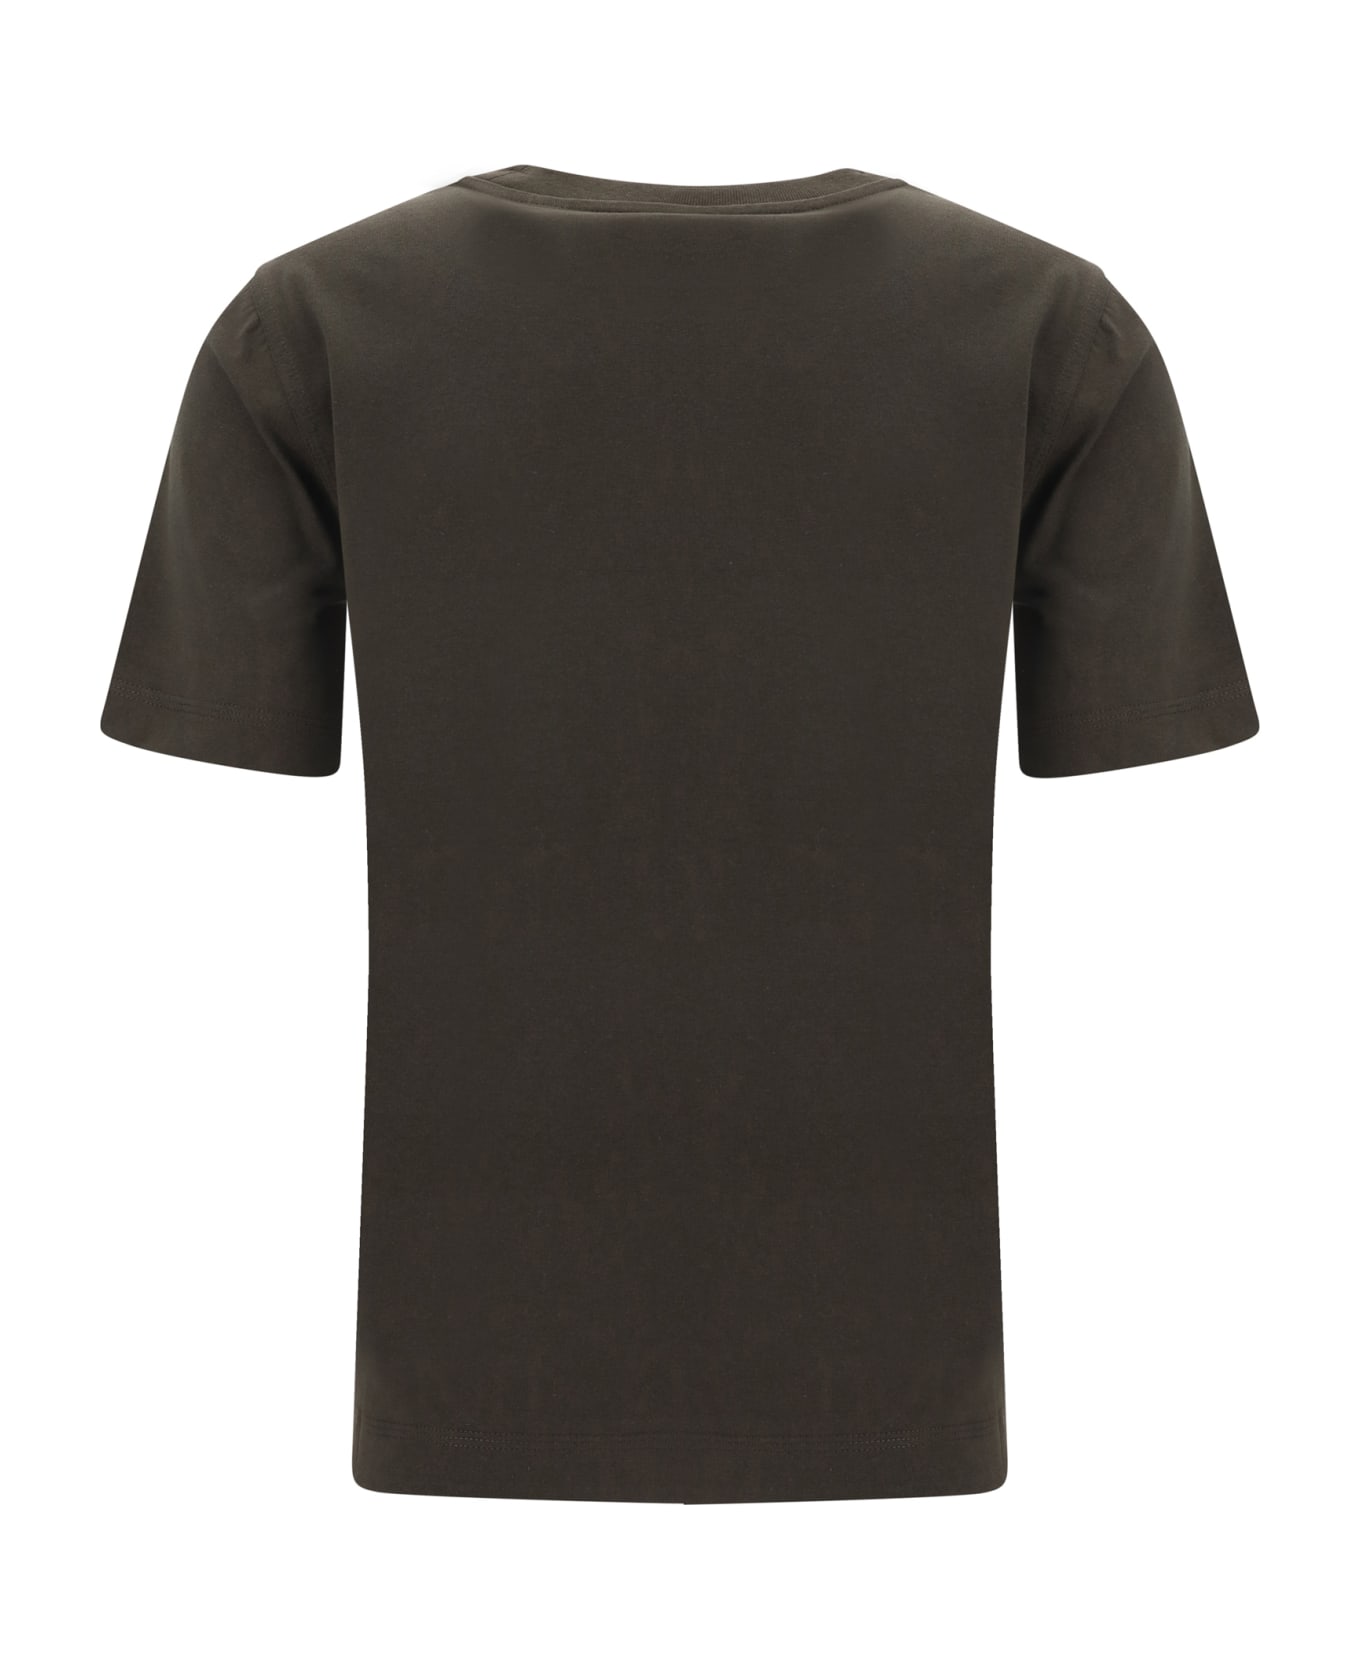 Burberry T-shirt - Snug